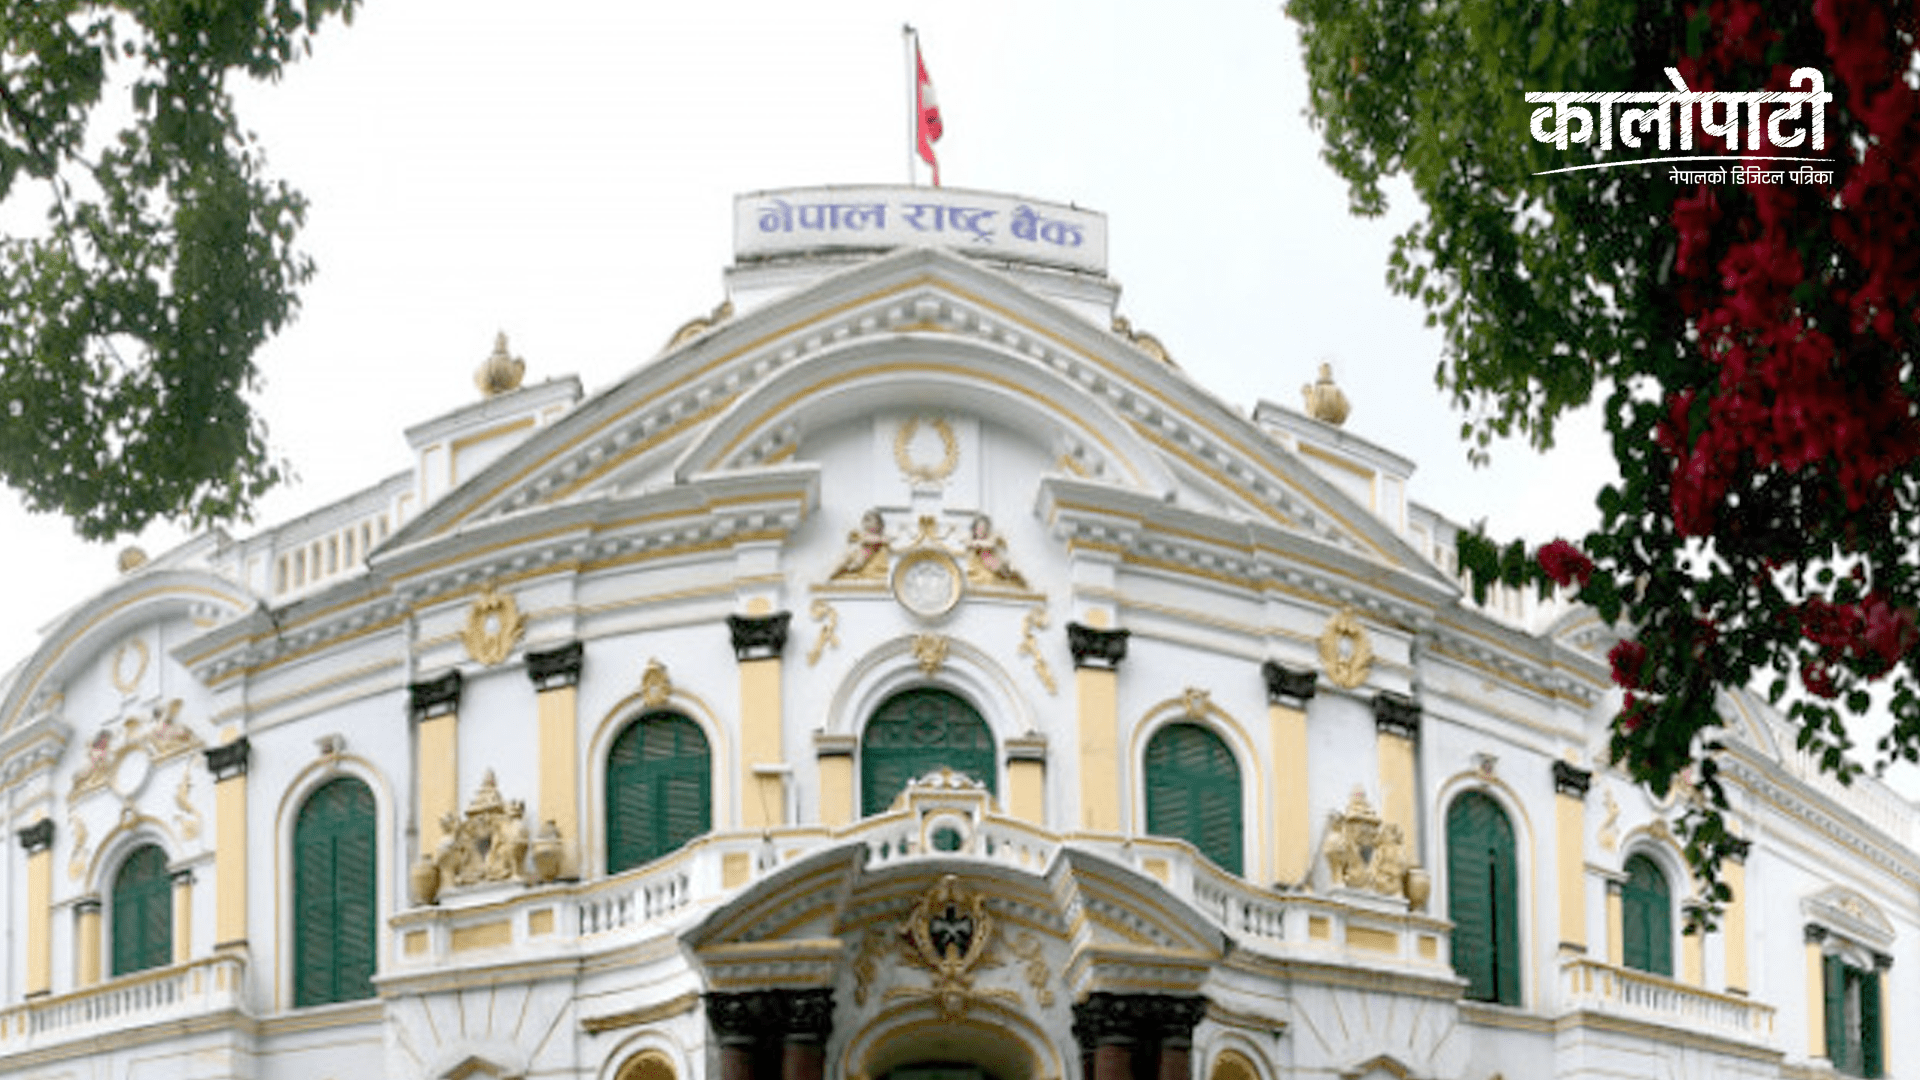 नेपाल राष्ट्र बैंकले बैंकिङ प्रणालीमार्फत थप ३५ अर्ब रुपैयाँ तान्दै